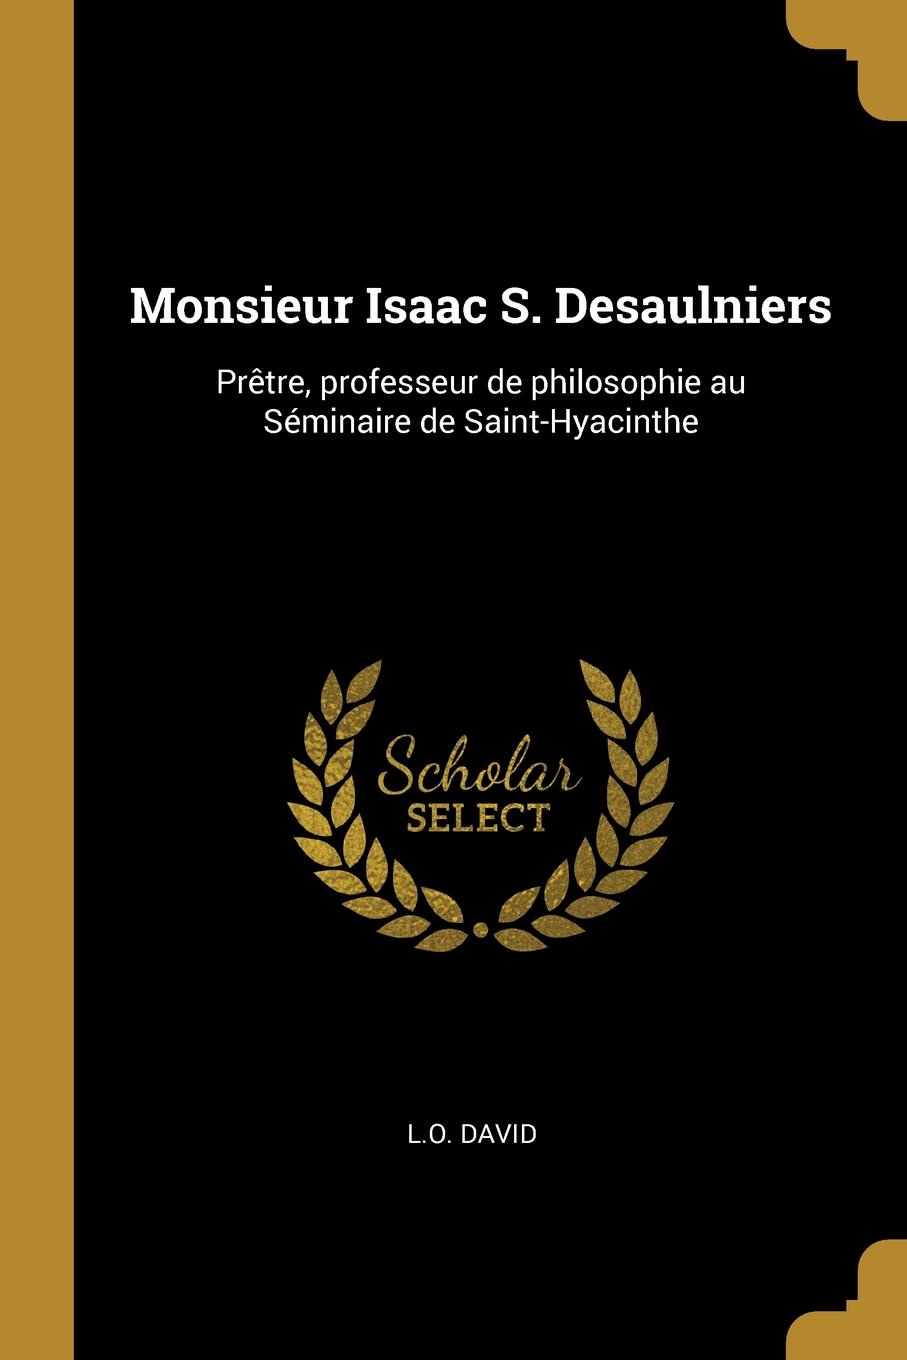 Monsieur Isaac S. Desaulniers. Pretre, professeur de philosophie au Seminaire de Saint-Hyacinthe